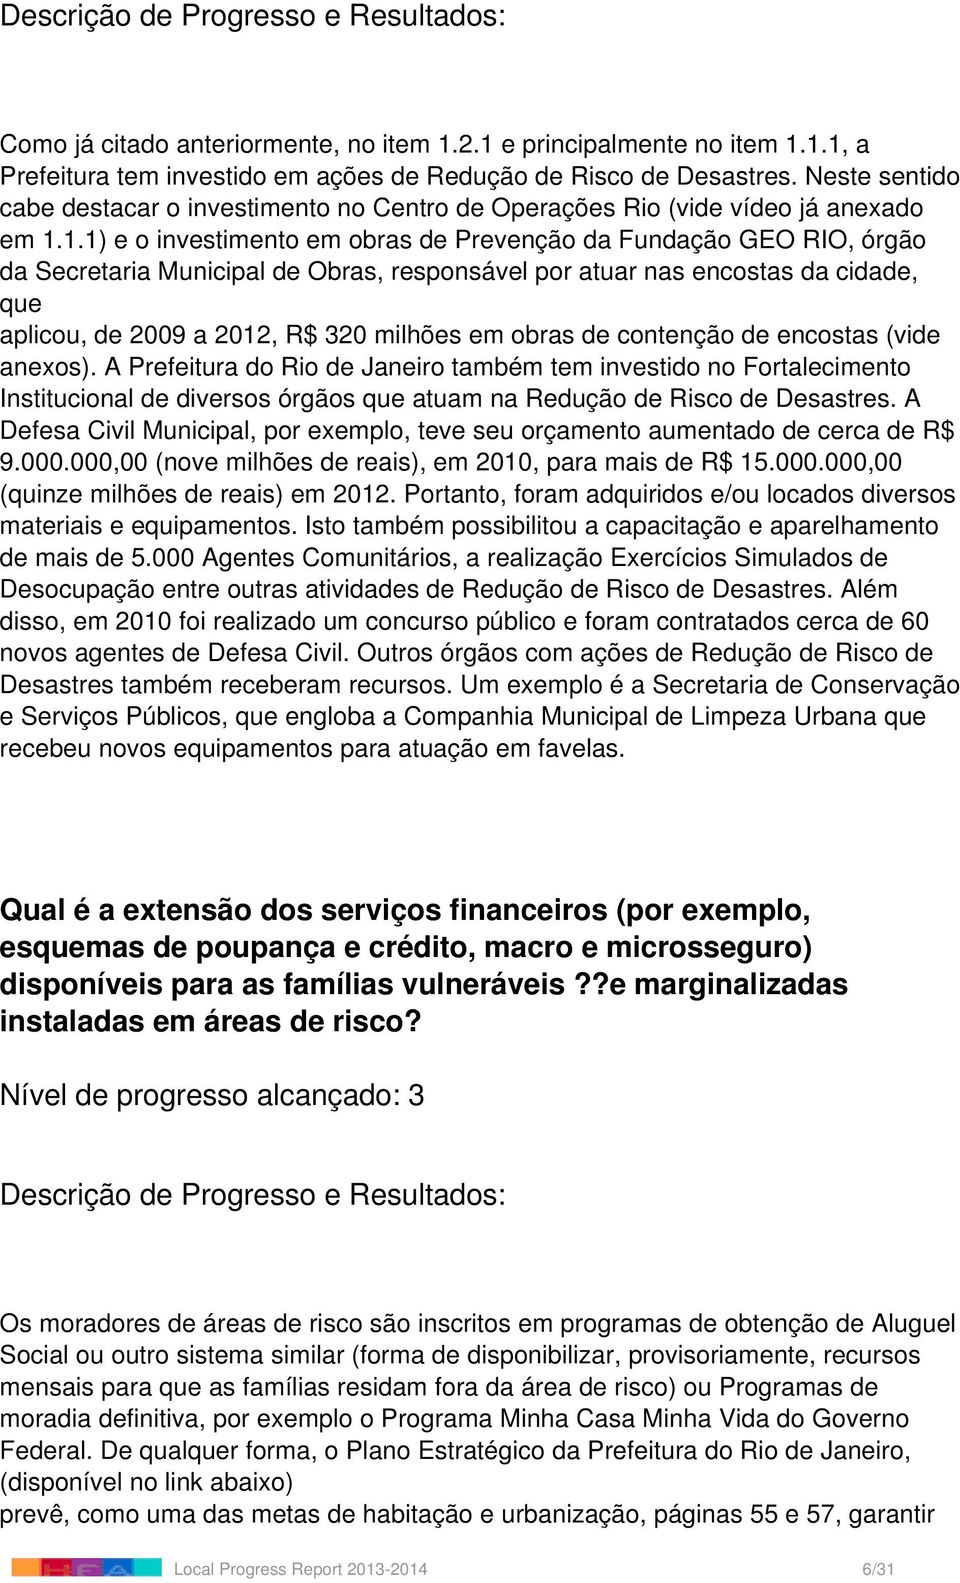 1.1) e o investimento em obras de Prevenção da Fundação GEO RIO, órgão da Secretaria Municipal de Obras, responsável por atuar nas encostas da cidade, que aplicou, de 2009 a 2012, R$ 320 milhões em